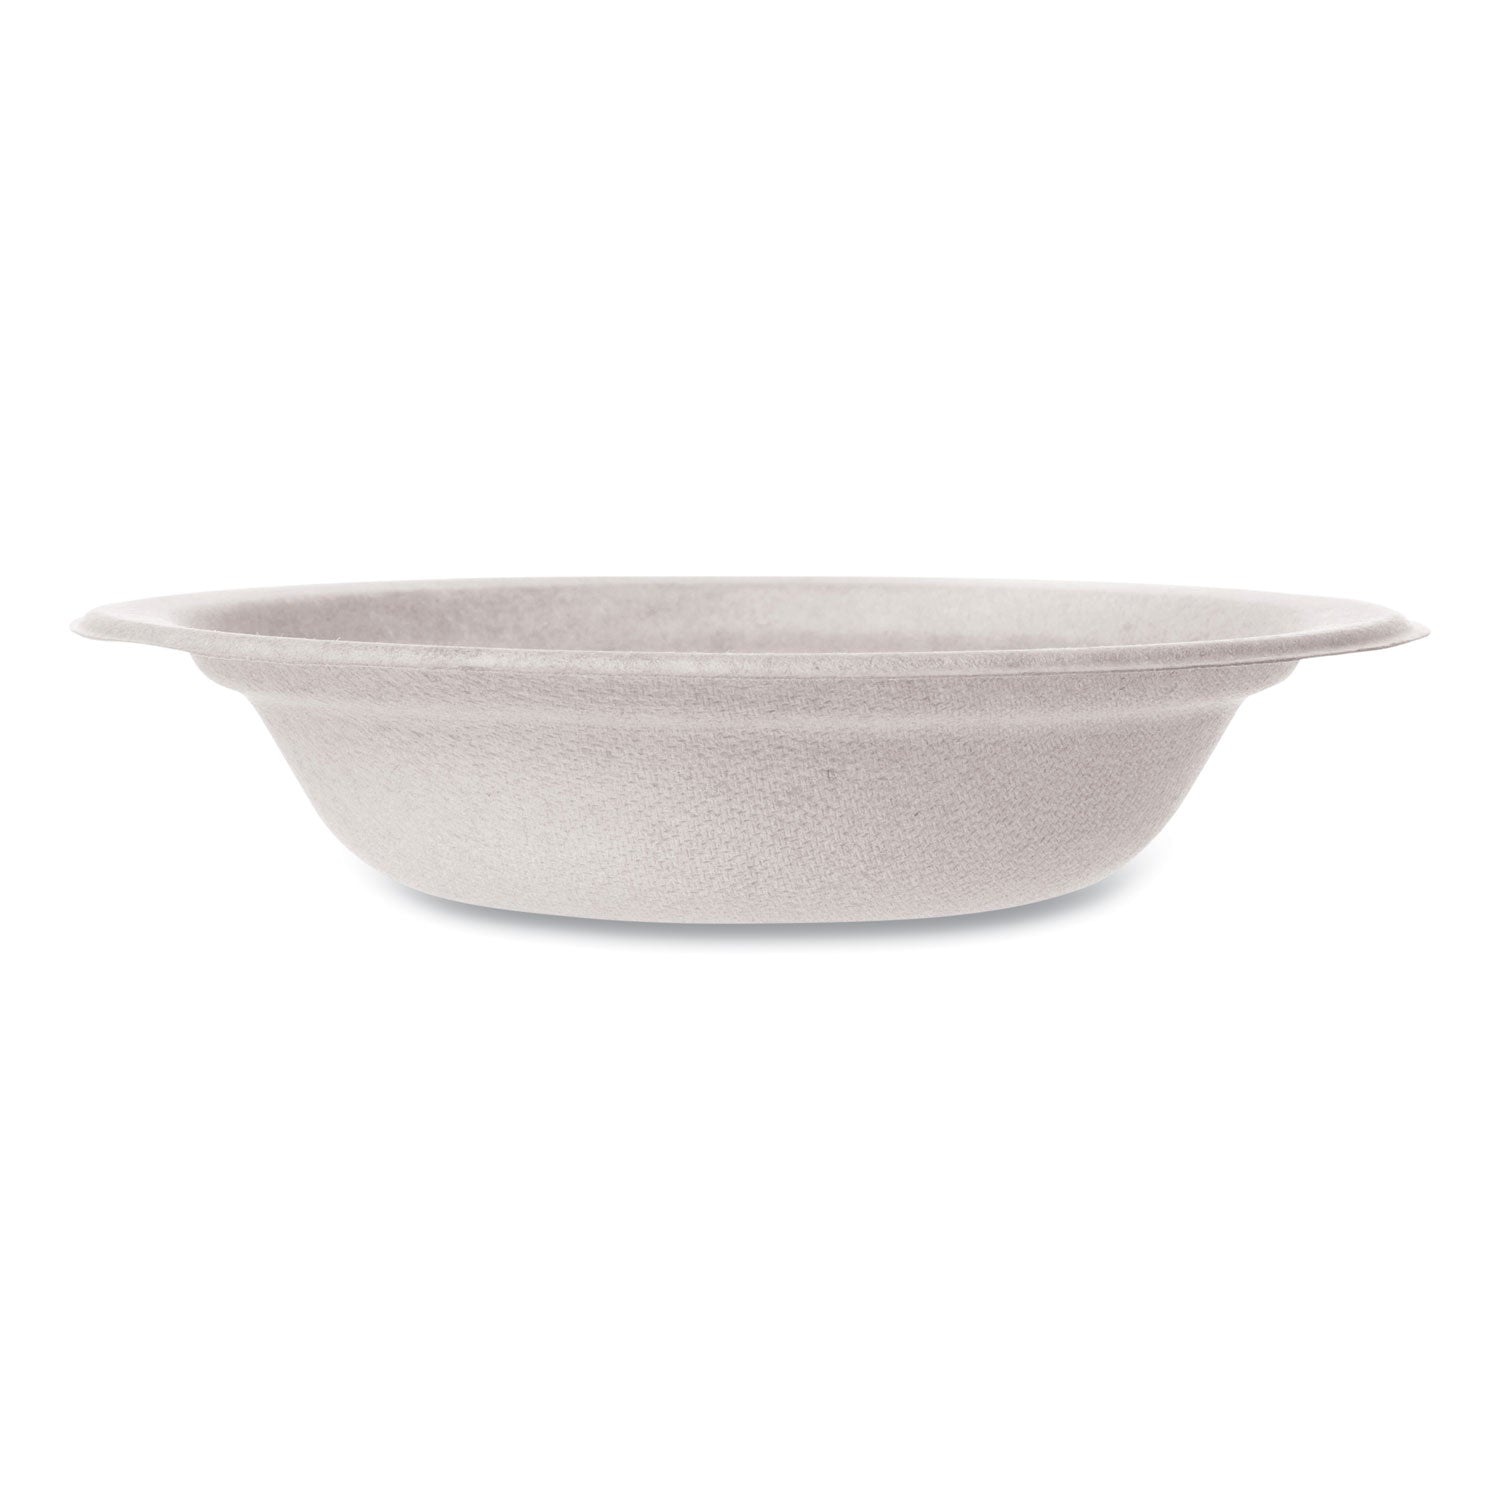 molded-fiber-tableware-bowl-12-oz-white-1000-carton_vegwhbrg12b - 1